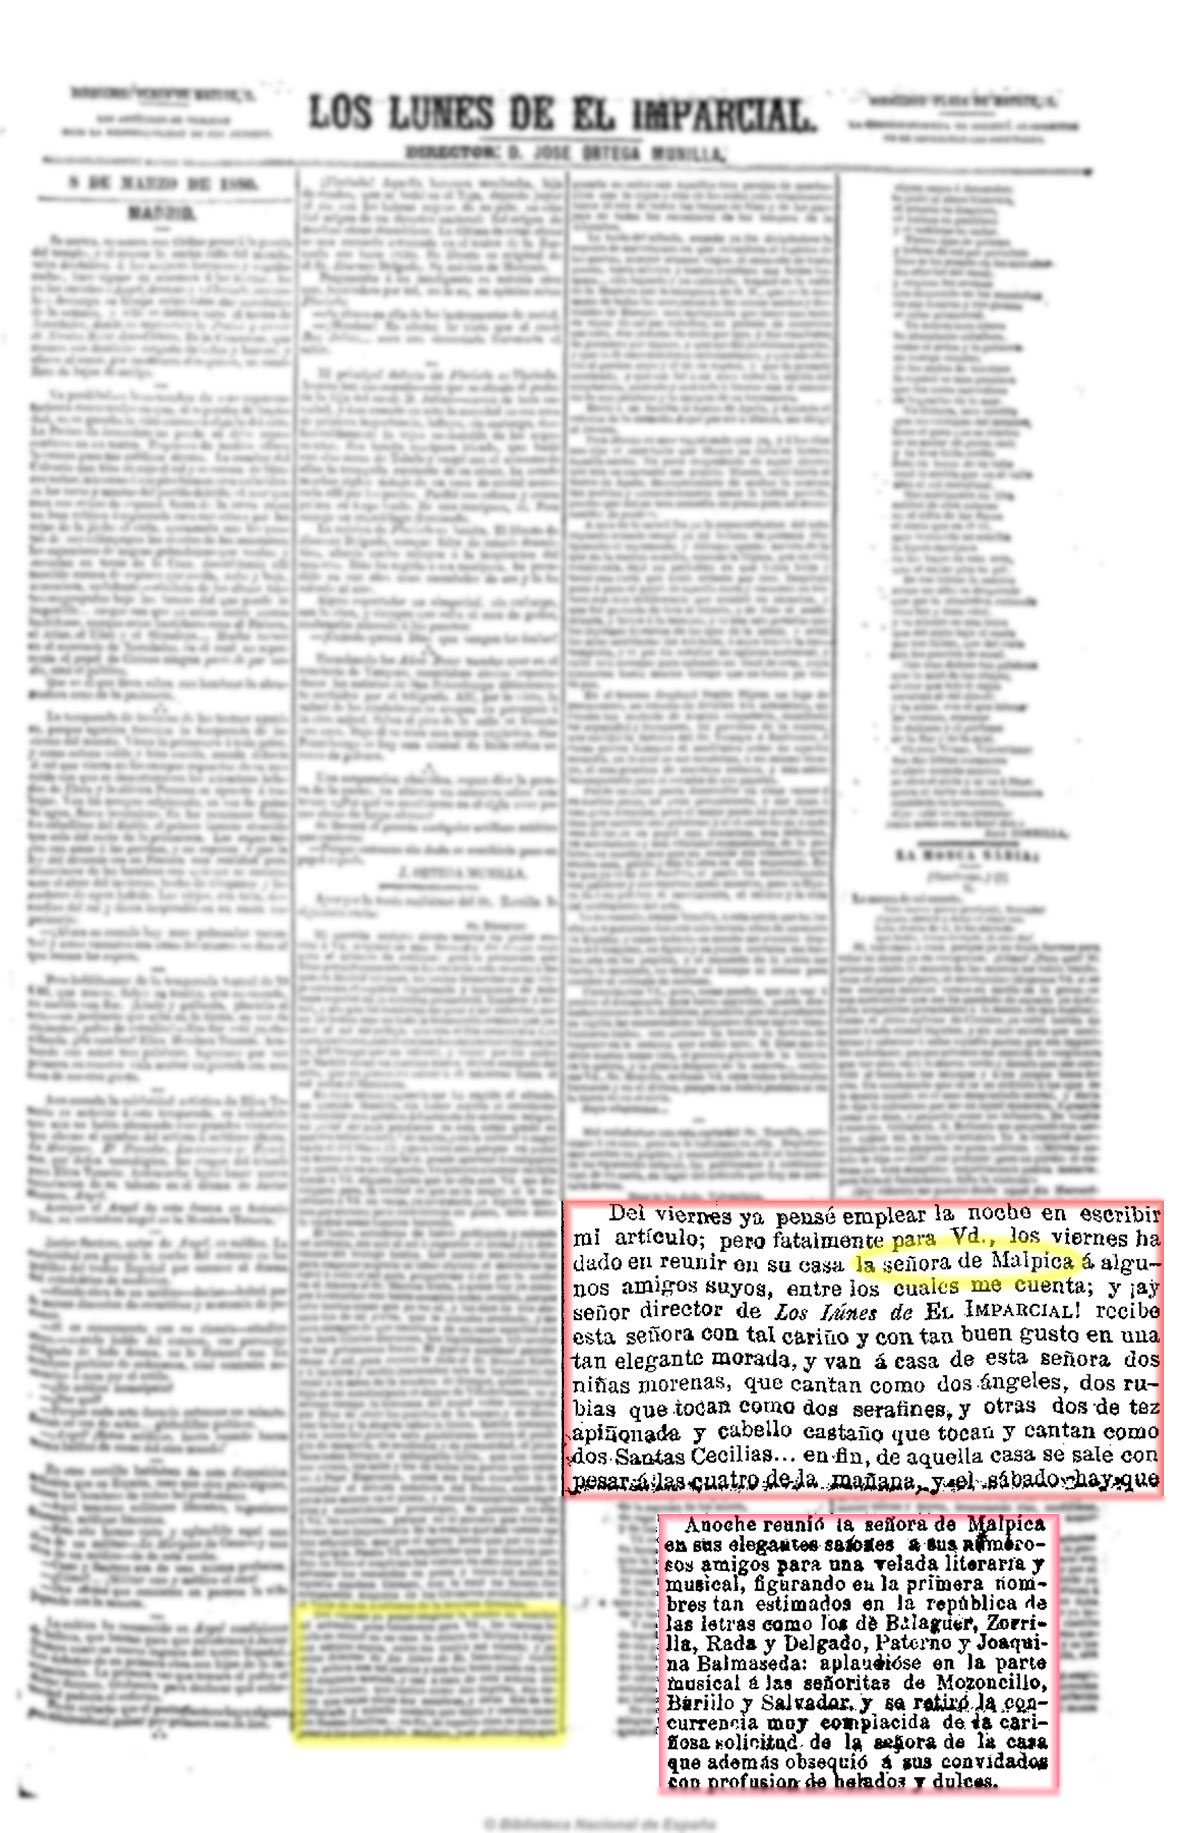 El Imparcial 8/3/1880, página 3. Explicaciones de Zorrilla para excusarse de no haber escrito un artículo para este periódico